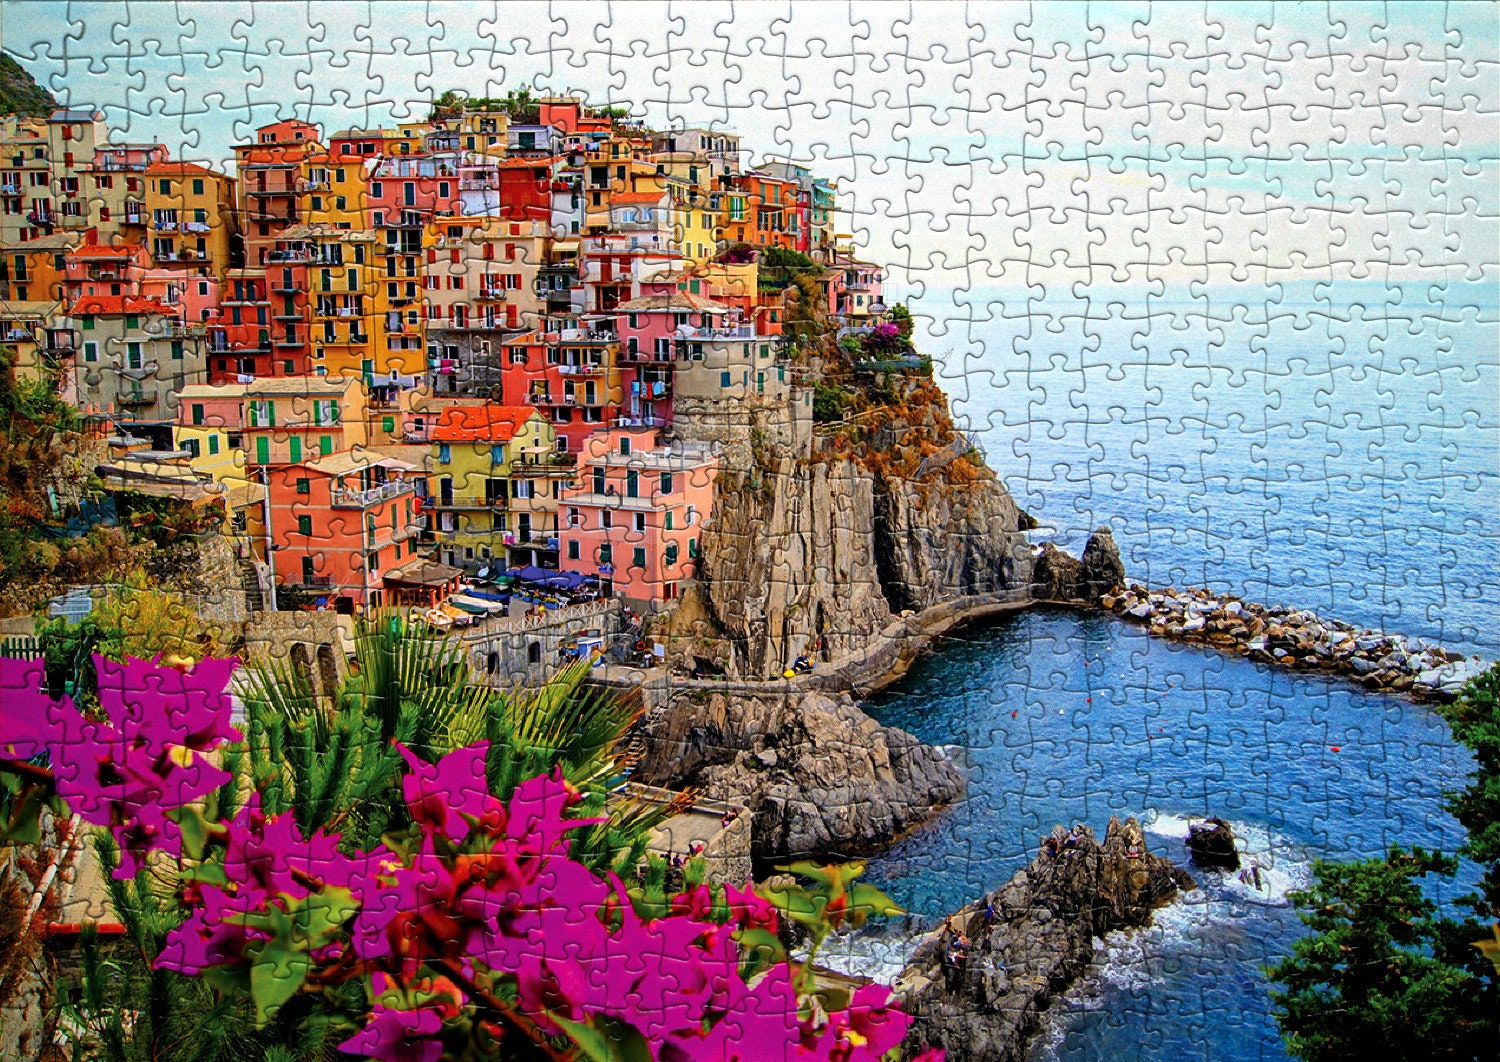 Puzzle 1000 pcs - Italie Manarola